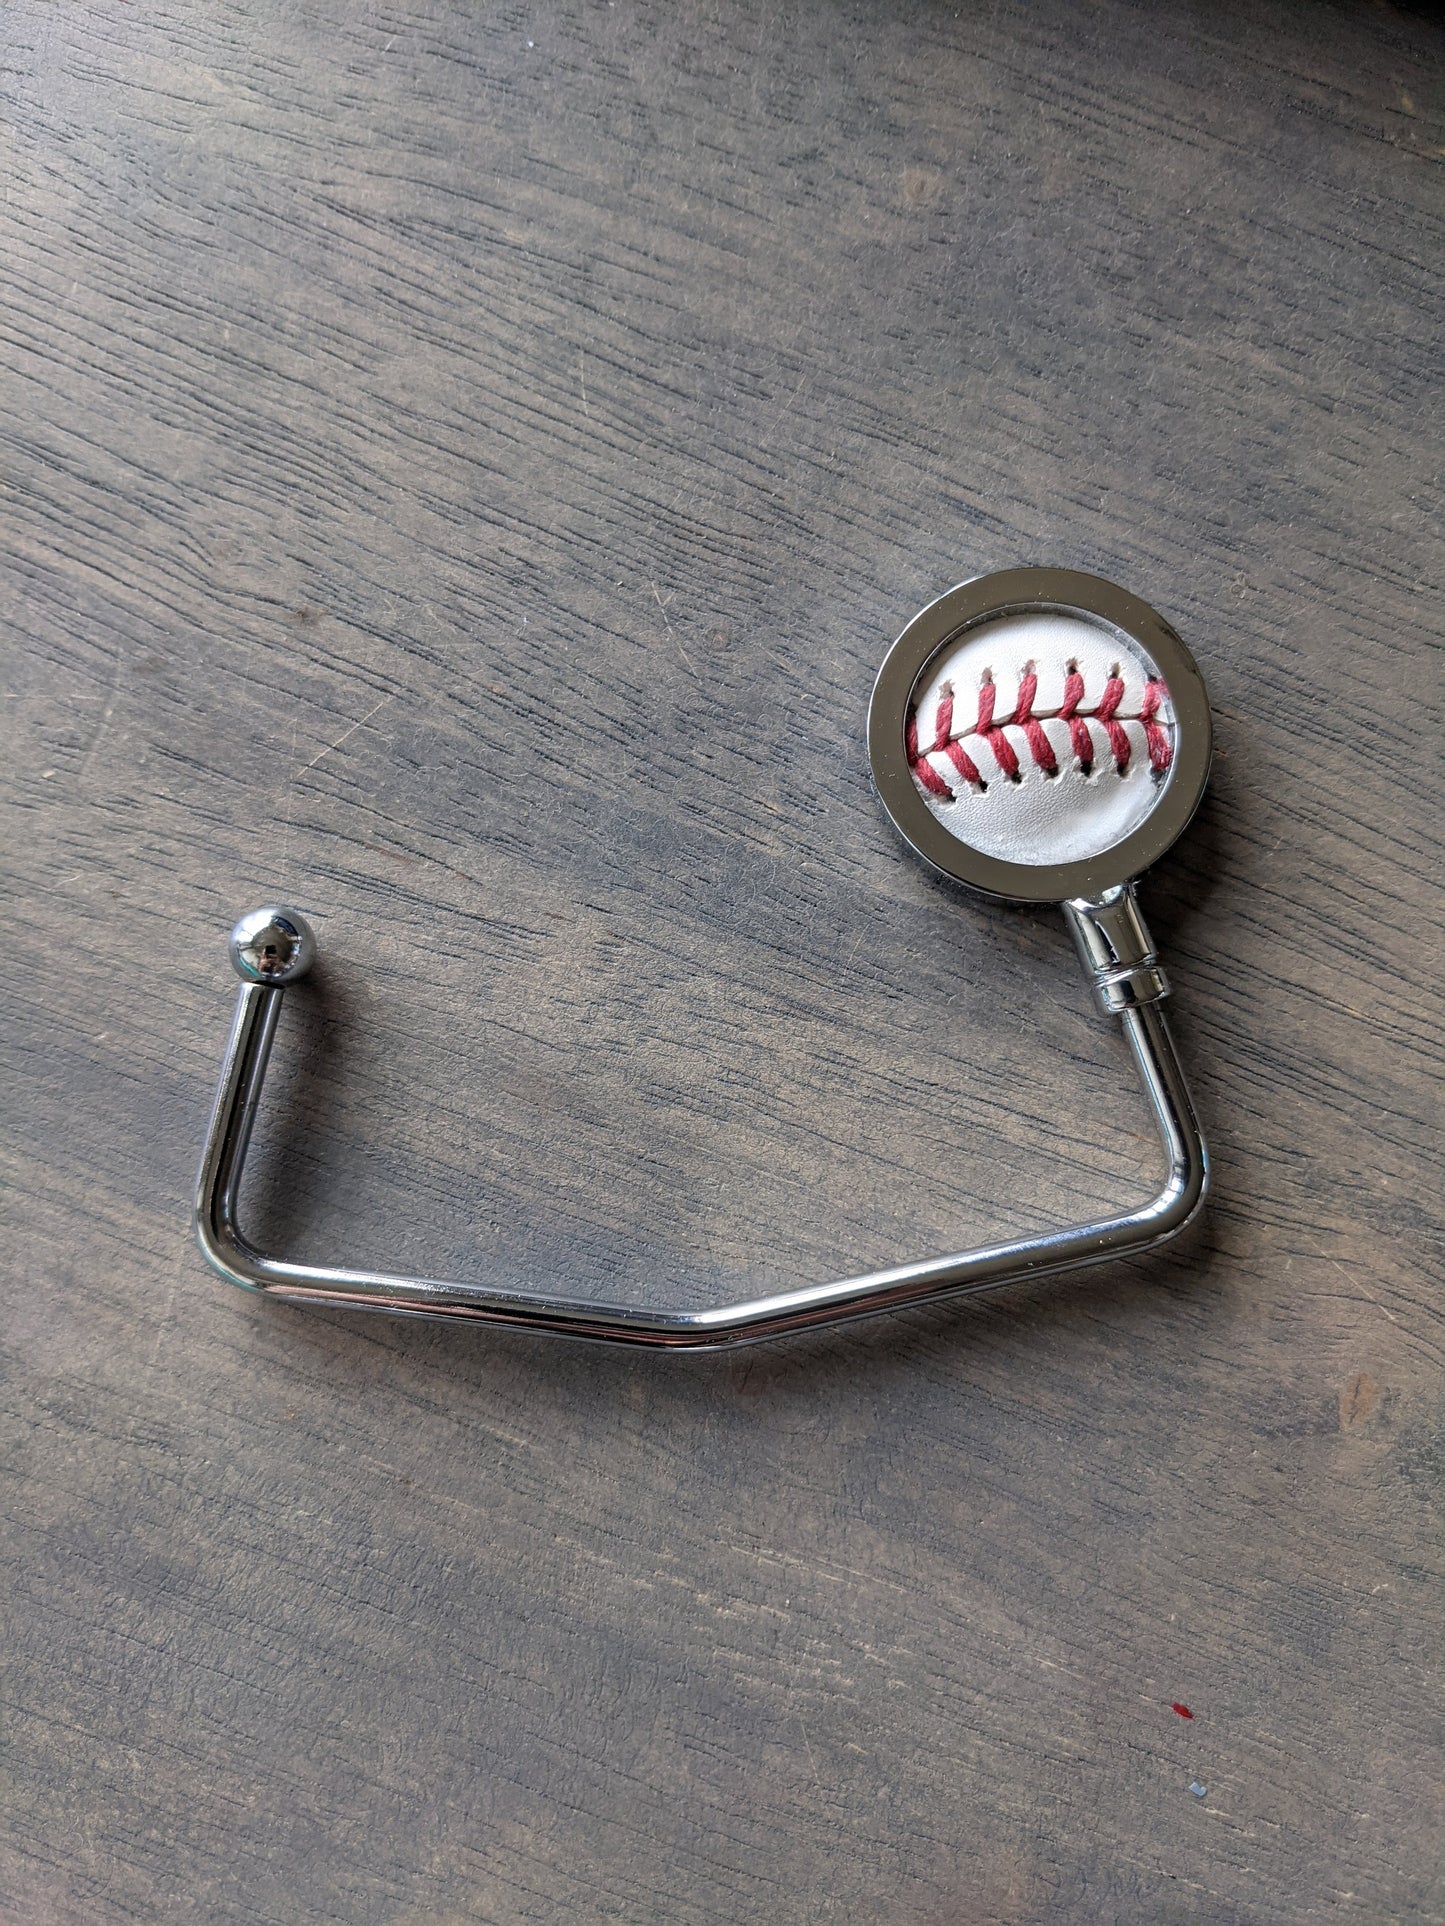 Baseball Purse Hanger